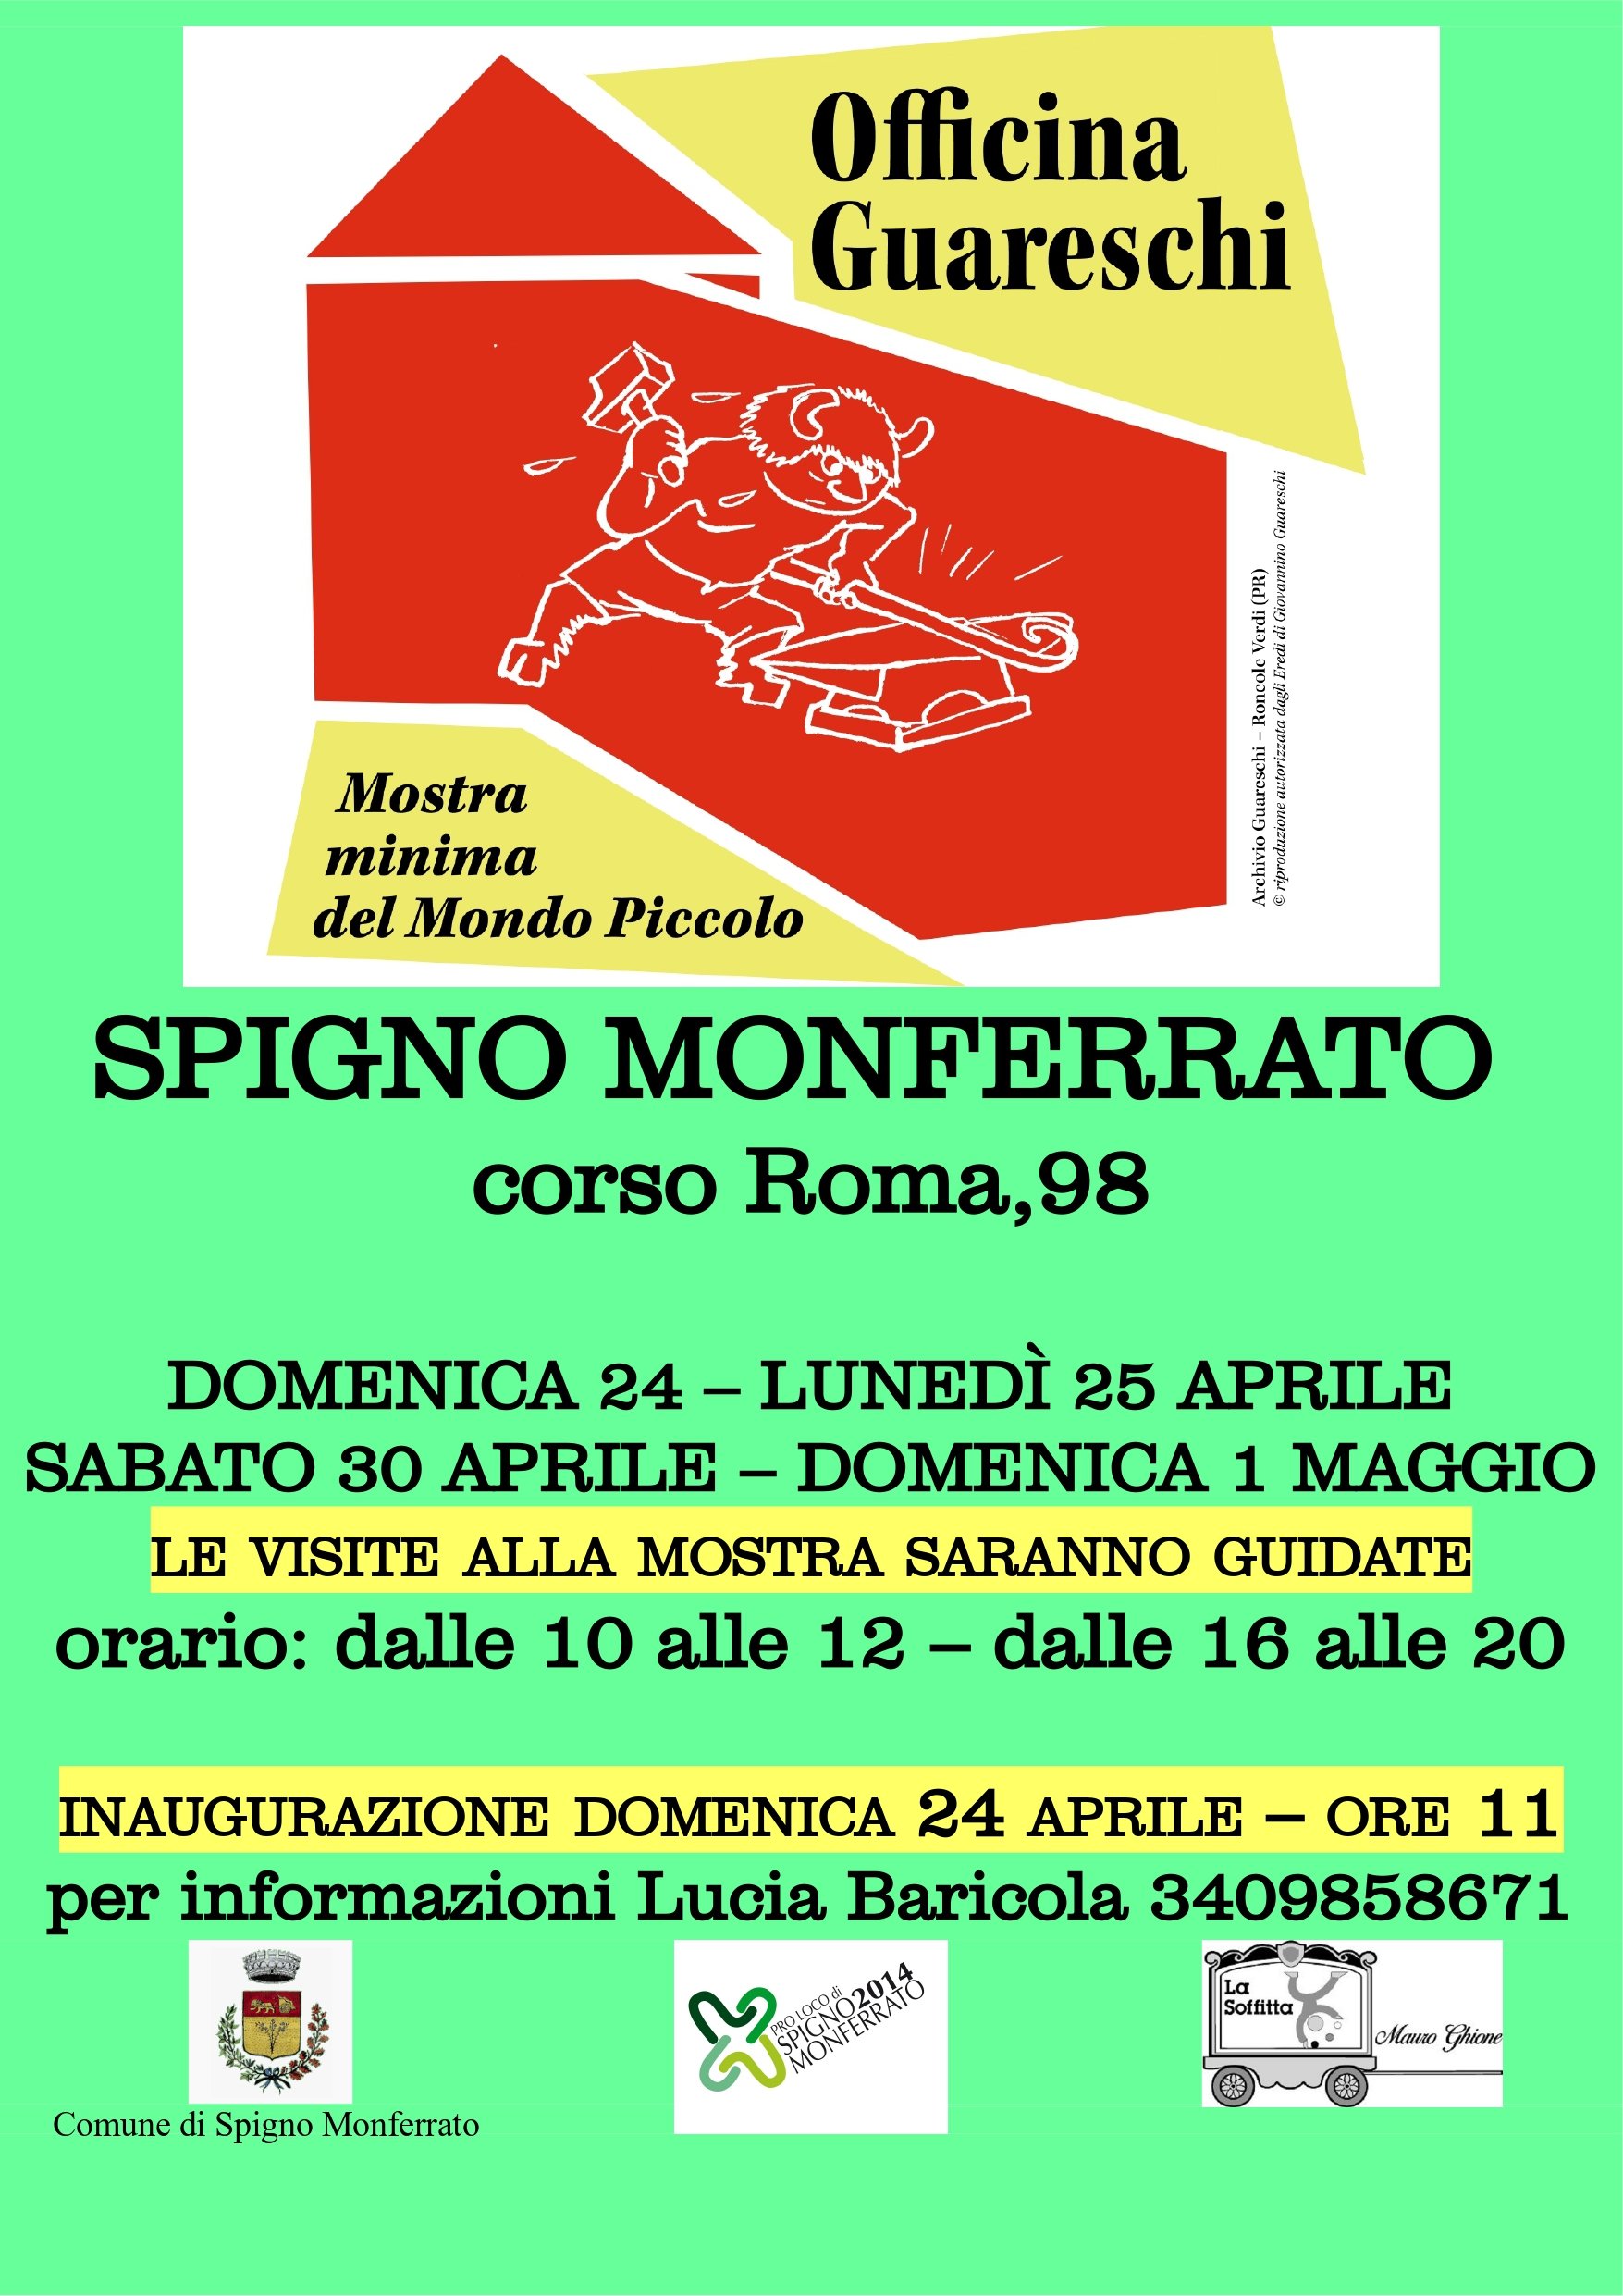 Dal 24 aprile “Officina Guareschi – mostra minima del Mondo Piccolo” a Spigno Monferrato